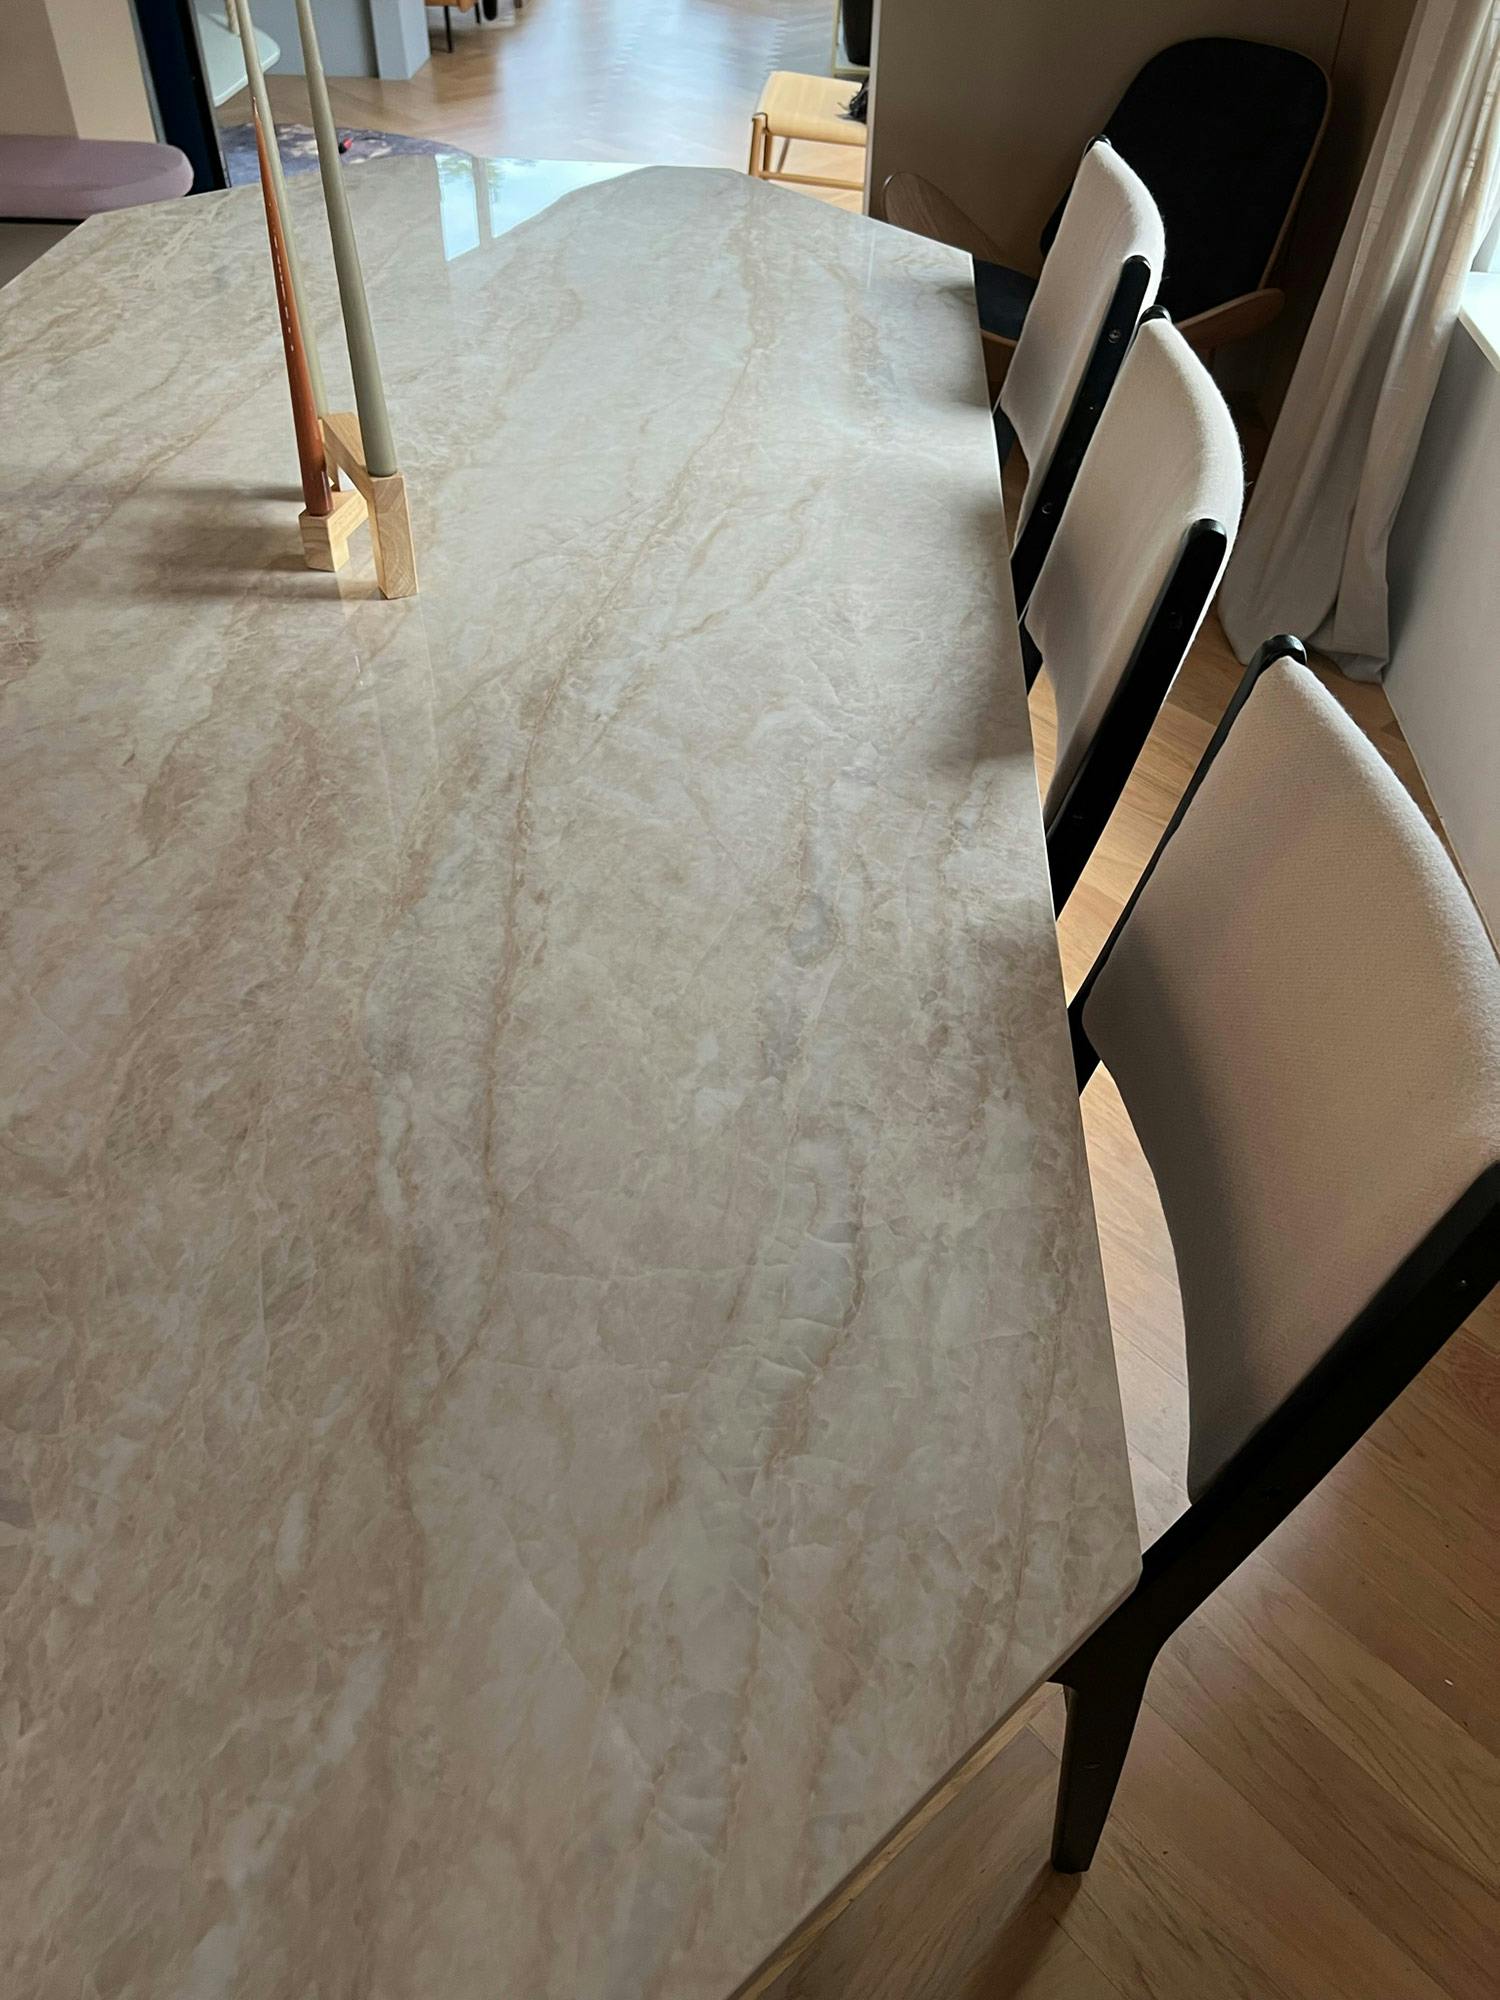 Numero immagine 35 della sezione corrente di An ordinary second-hand table becomes an eye-catching and elegant piece of furniture thanks to DKTN di Cosentino Italia